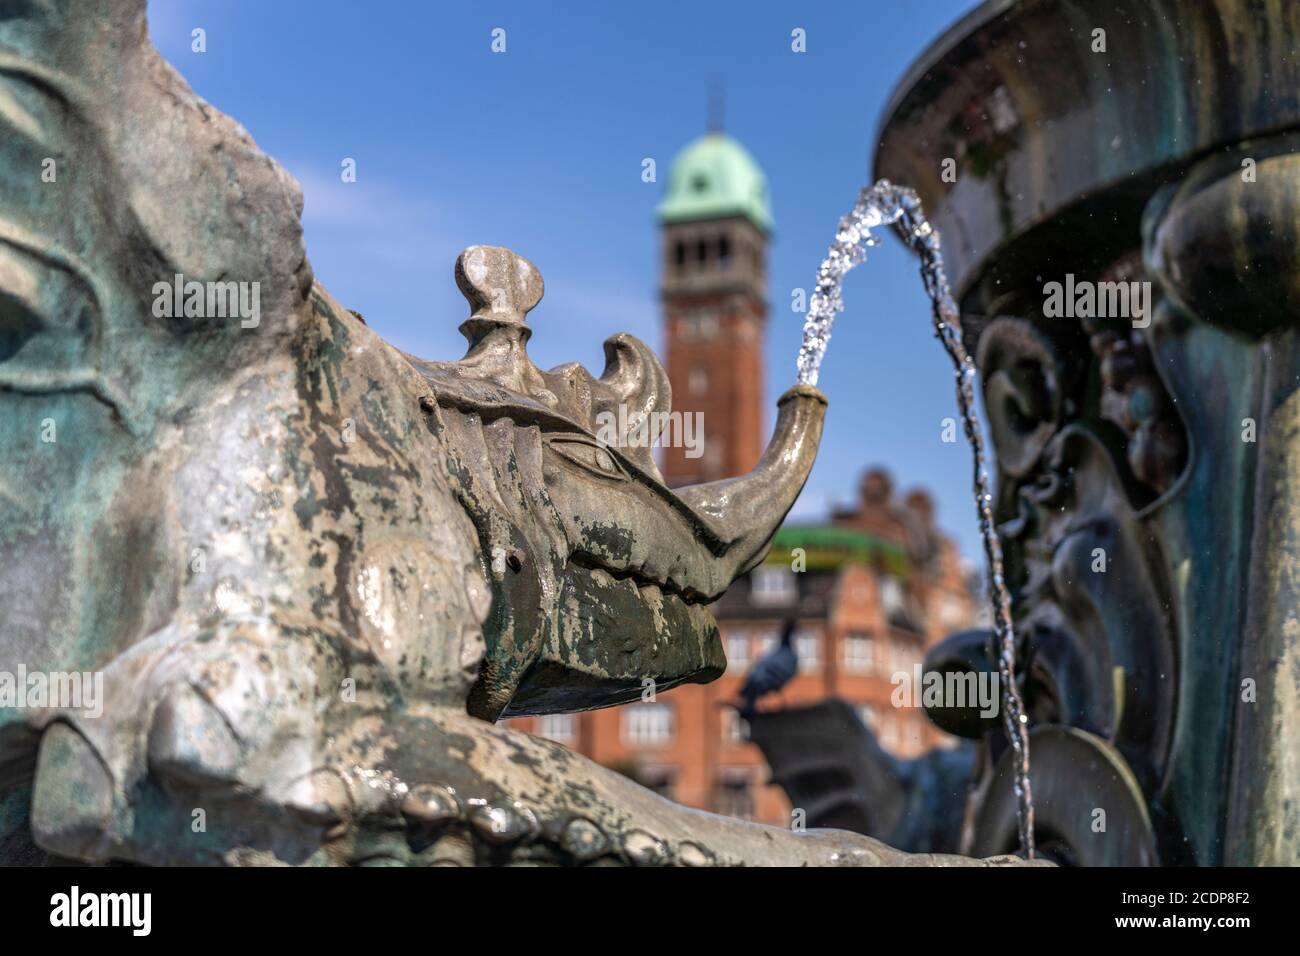 Detail des  Drachenspringbrunnen  Dragespringvand auf dem Rathausplatz, Kopenhagen, Dänemark, Europa |  Detail of the  Dragon Fountain  Dragespringvan Stock Photo